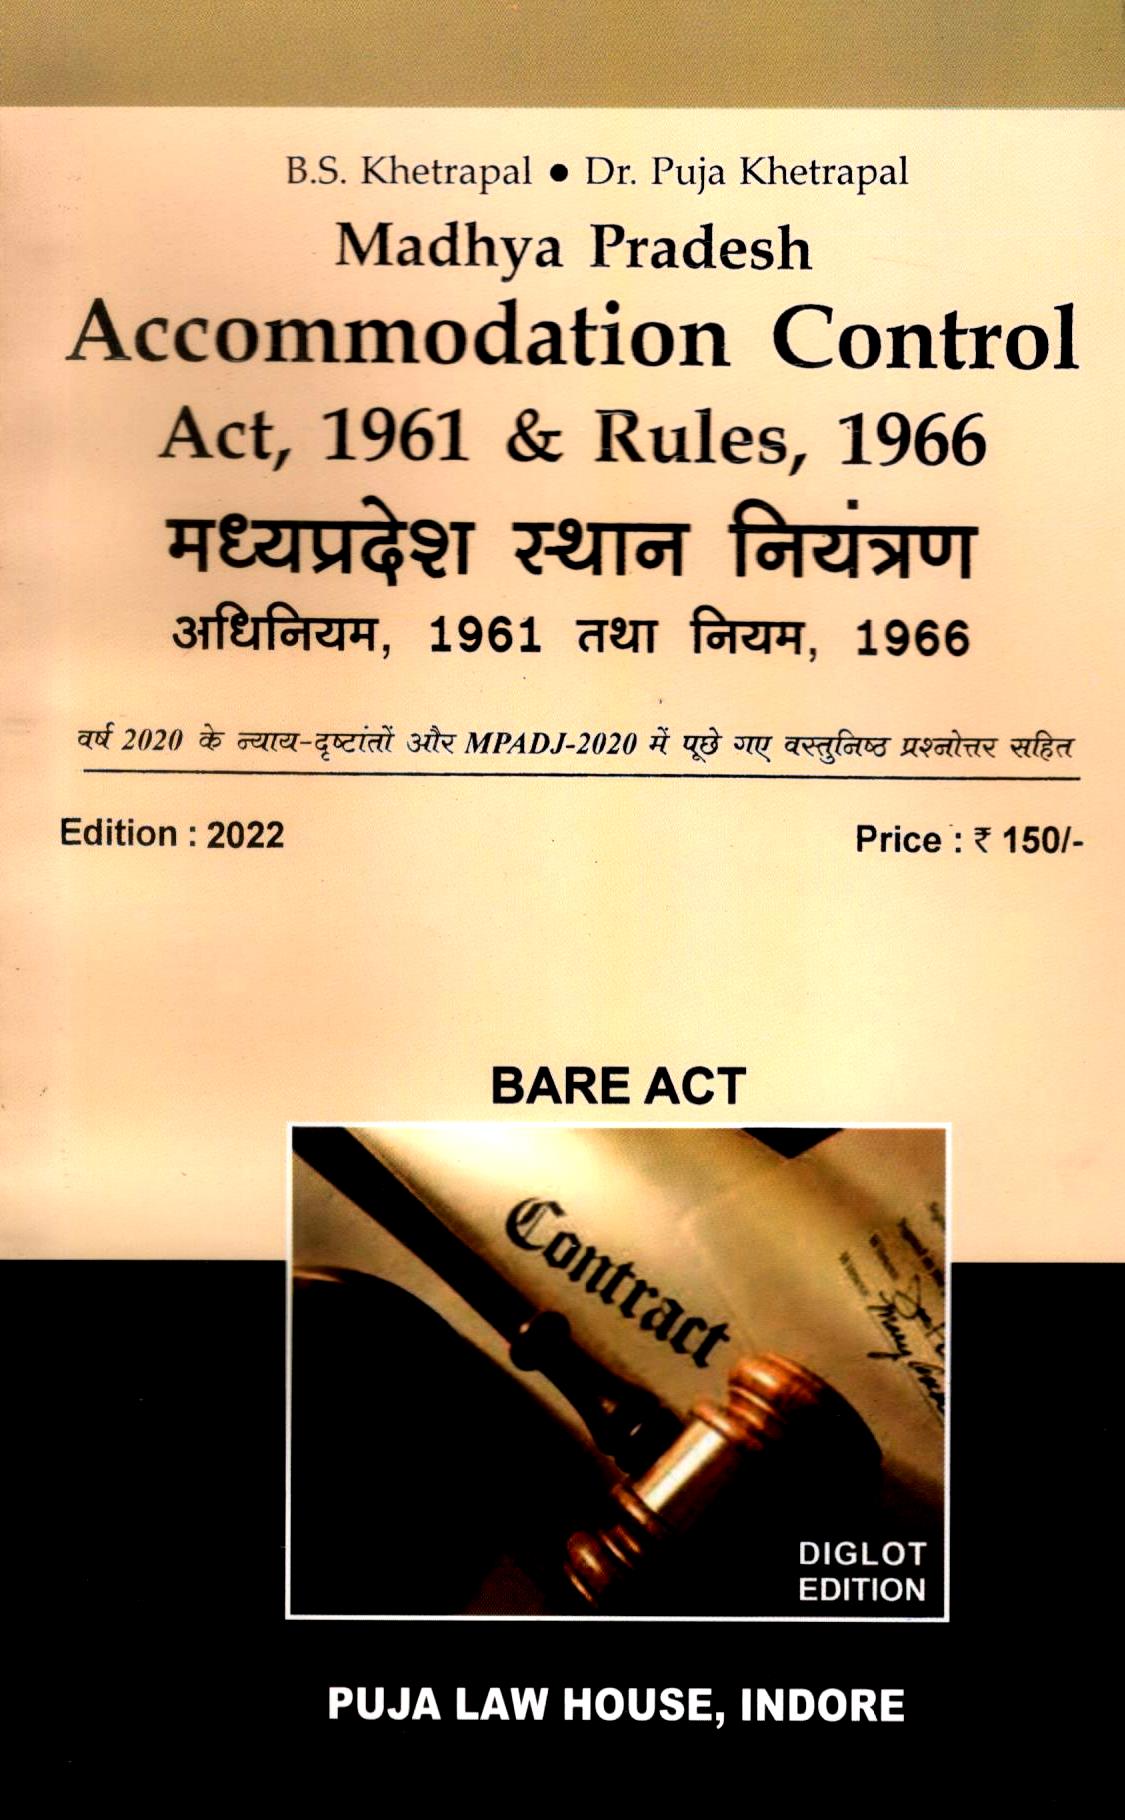 मध्य प्रदेश स्थान नियंत्रण अधिनियम,1961 एवं नियम, 1966 / Madhya Pradesh Accommodation Control Act, 1961 & Rules, 1966 